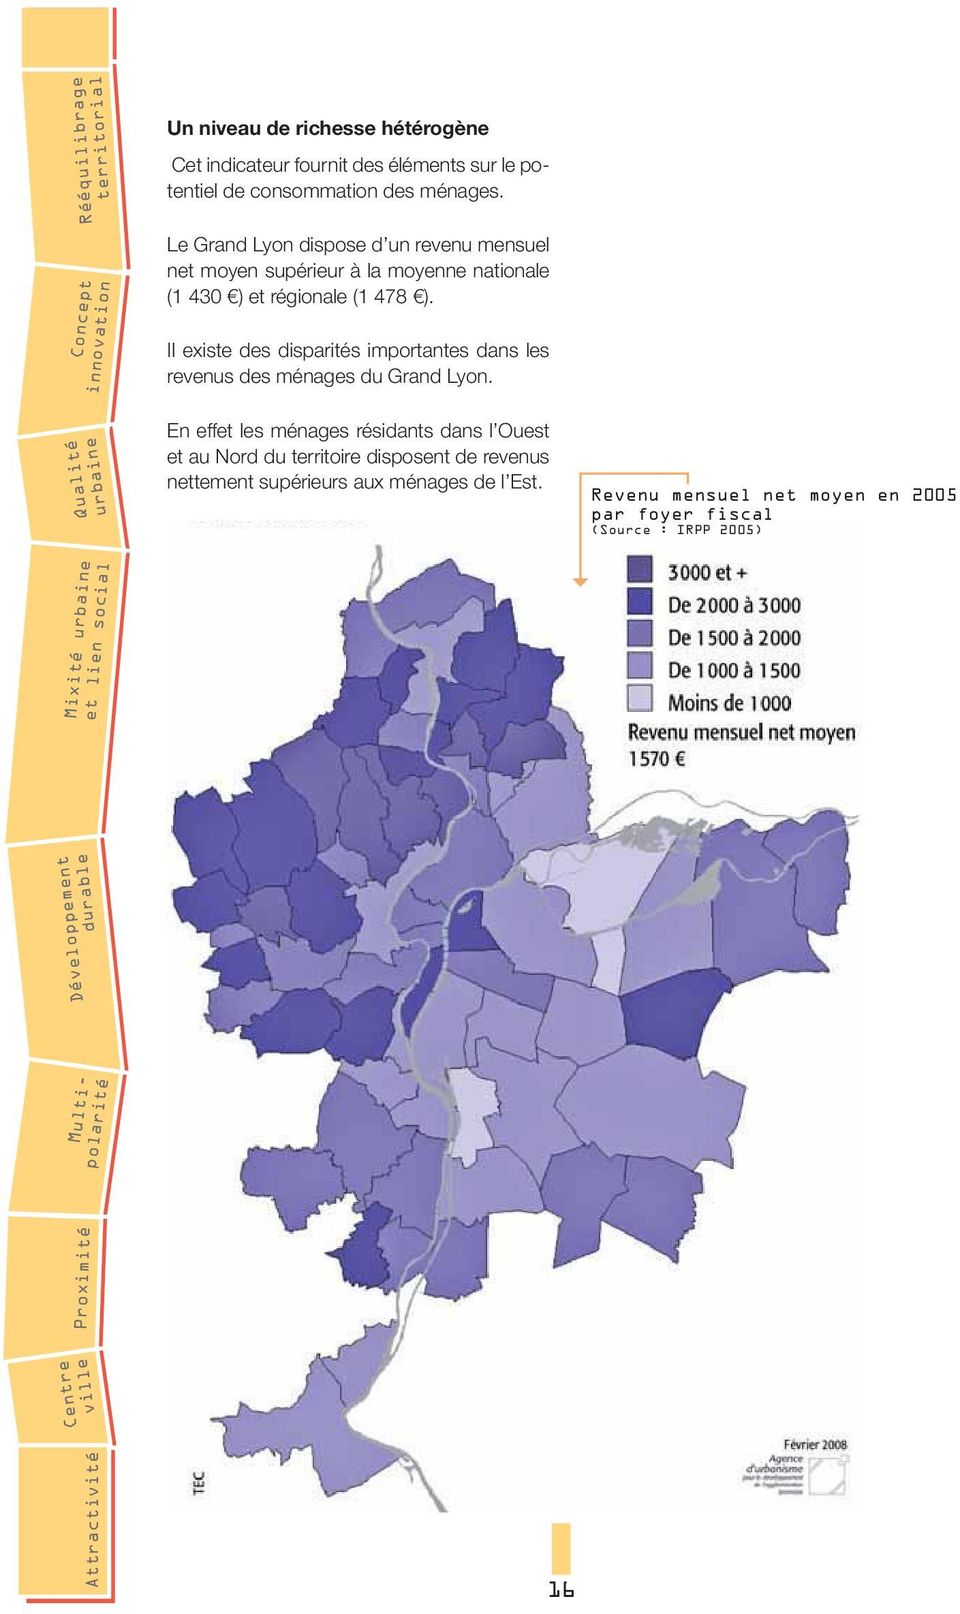 Il existe des disparités importantes dans les revenus des ménages du Grand Lyon.